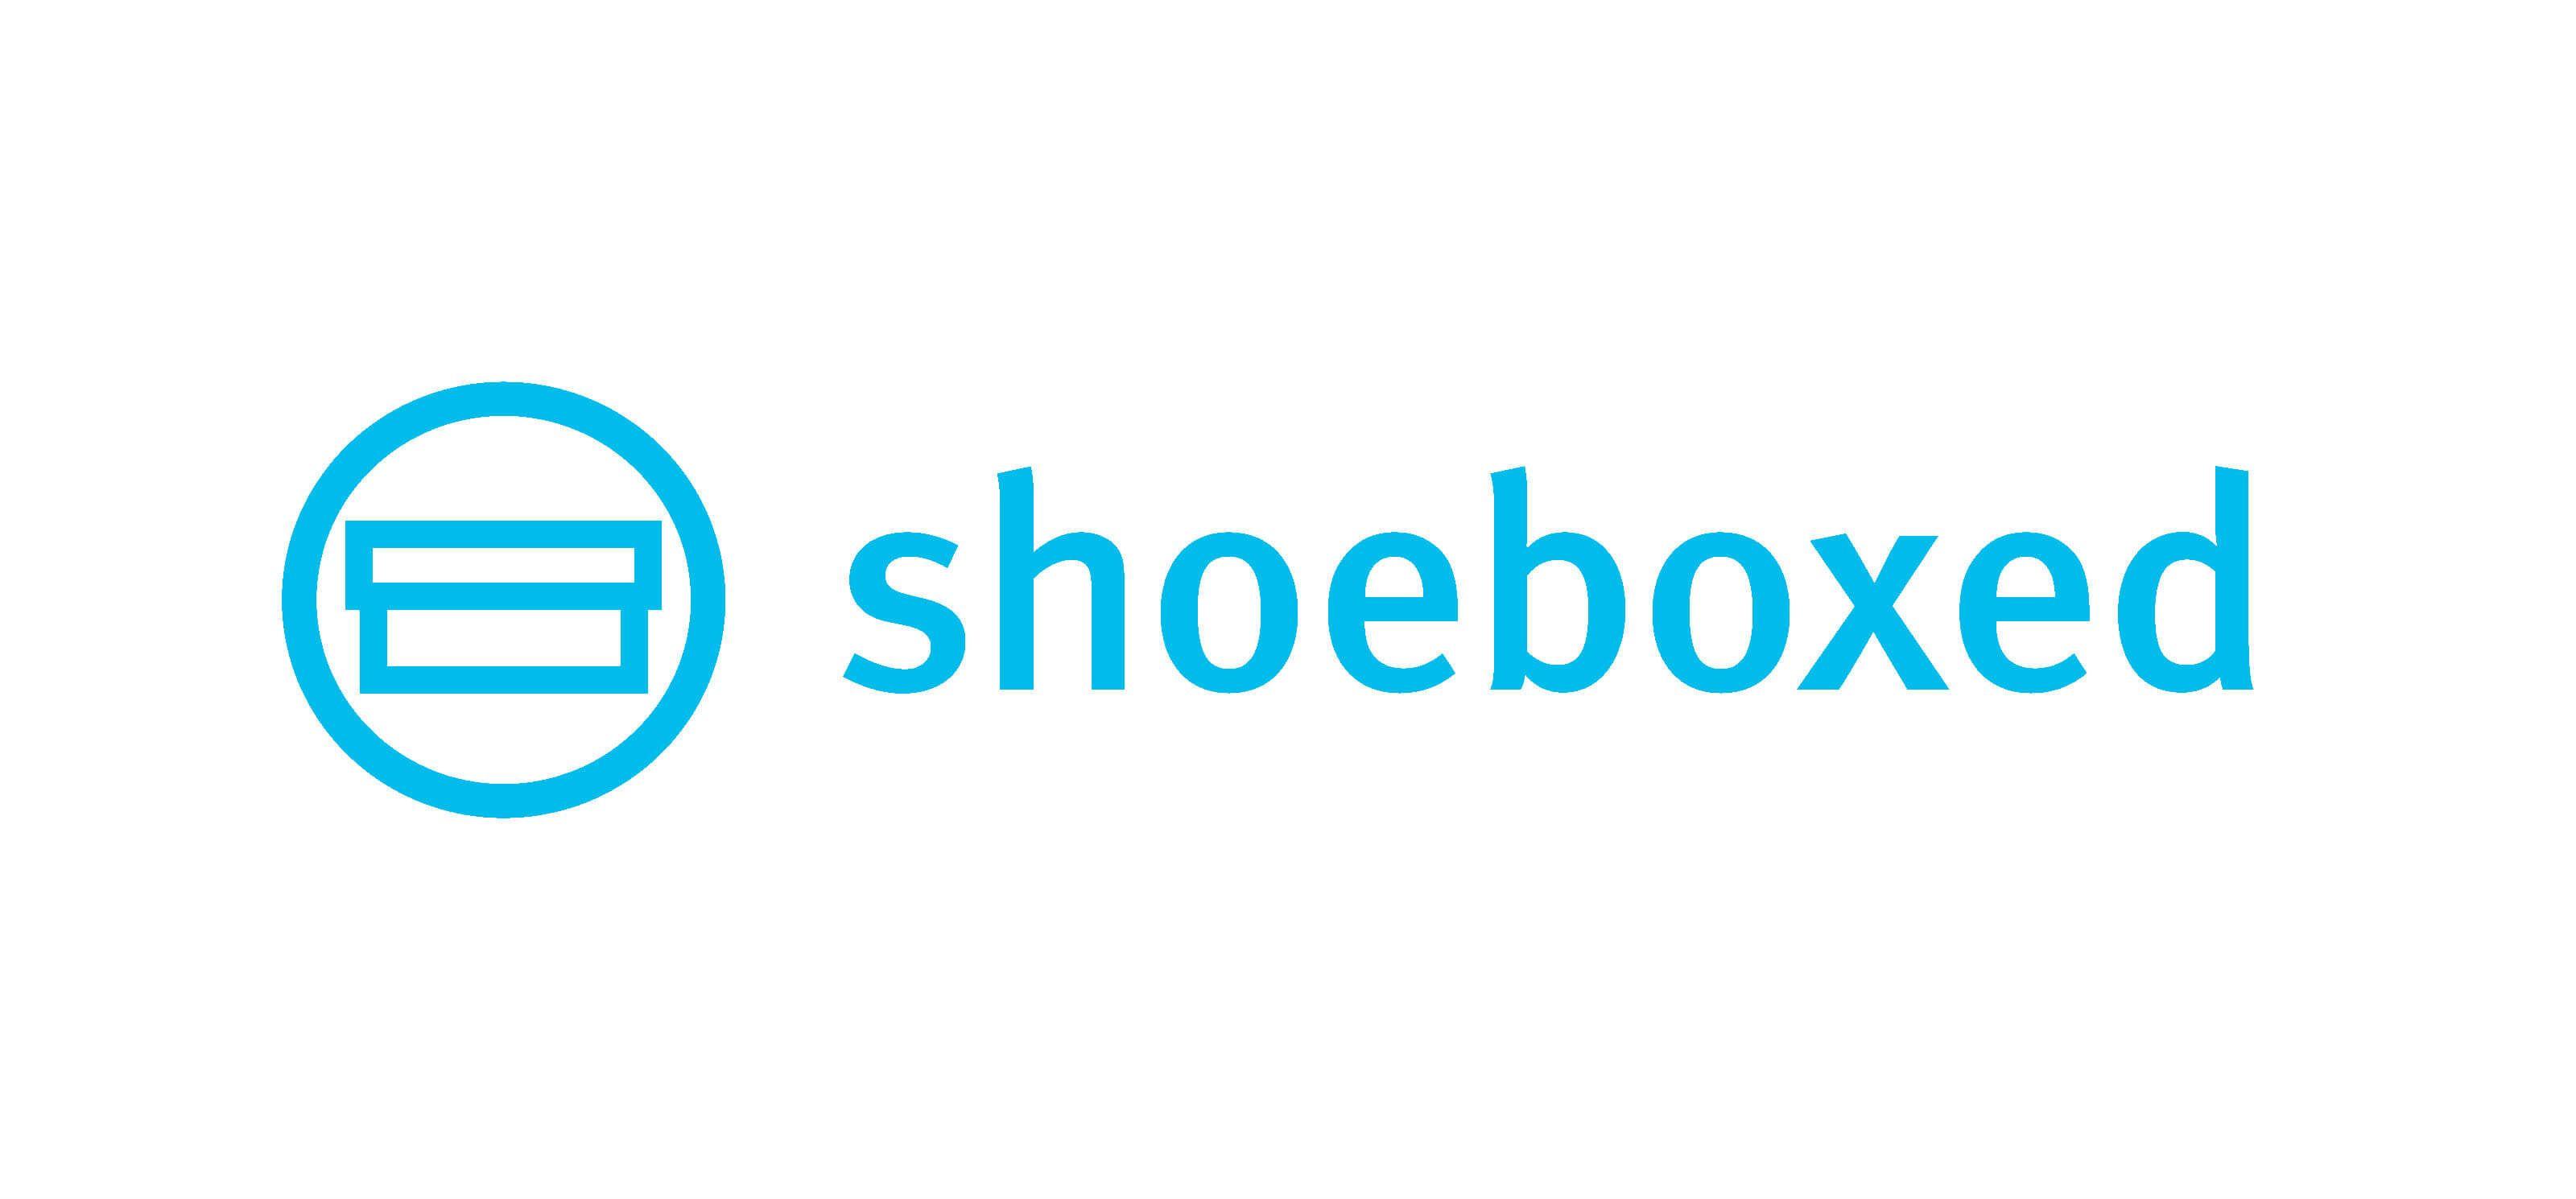 Eliminate Logo - Shoeboxed Transaprent Logo with White Box - Shoeboxed.com ...